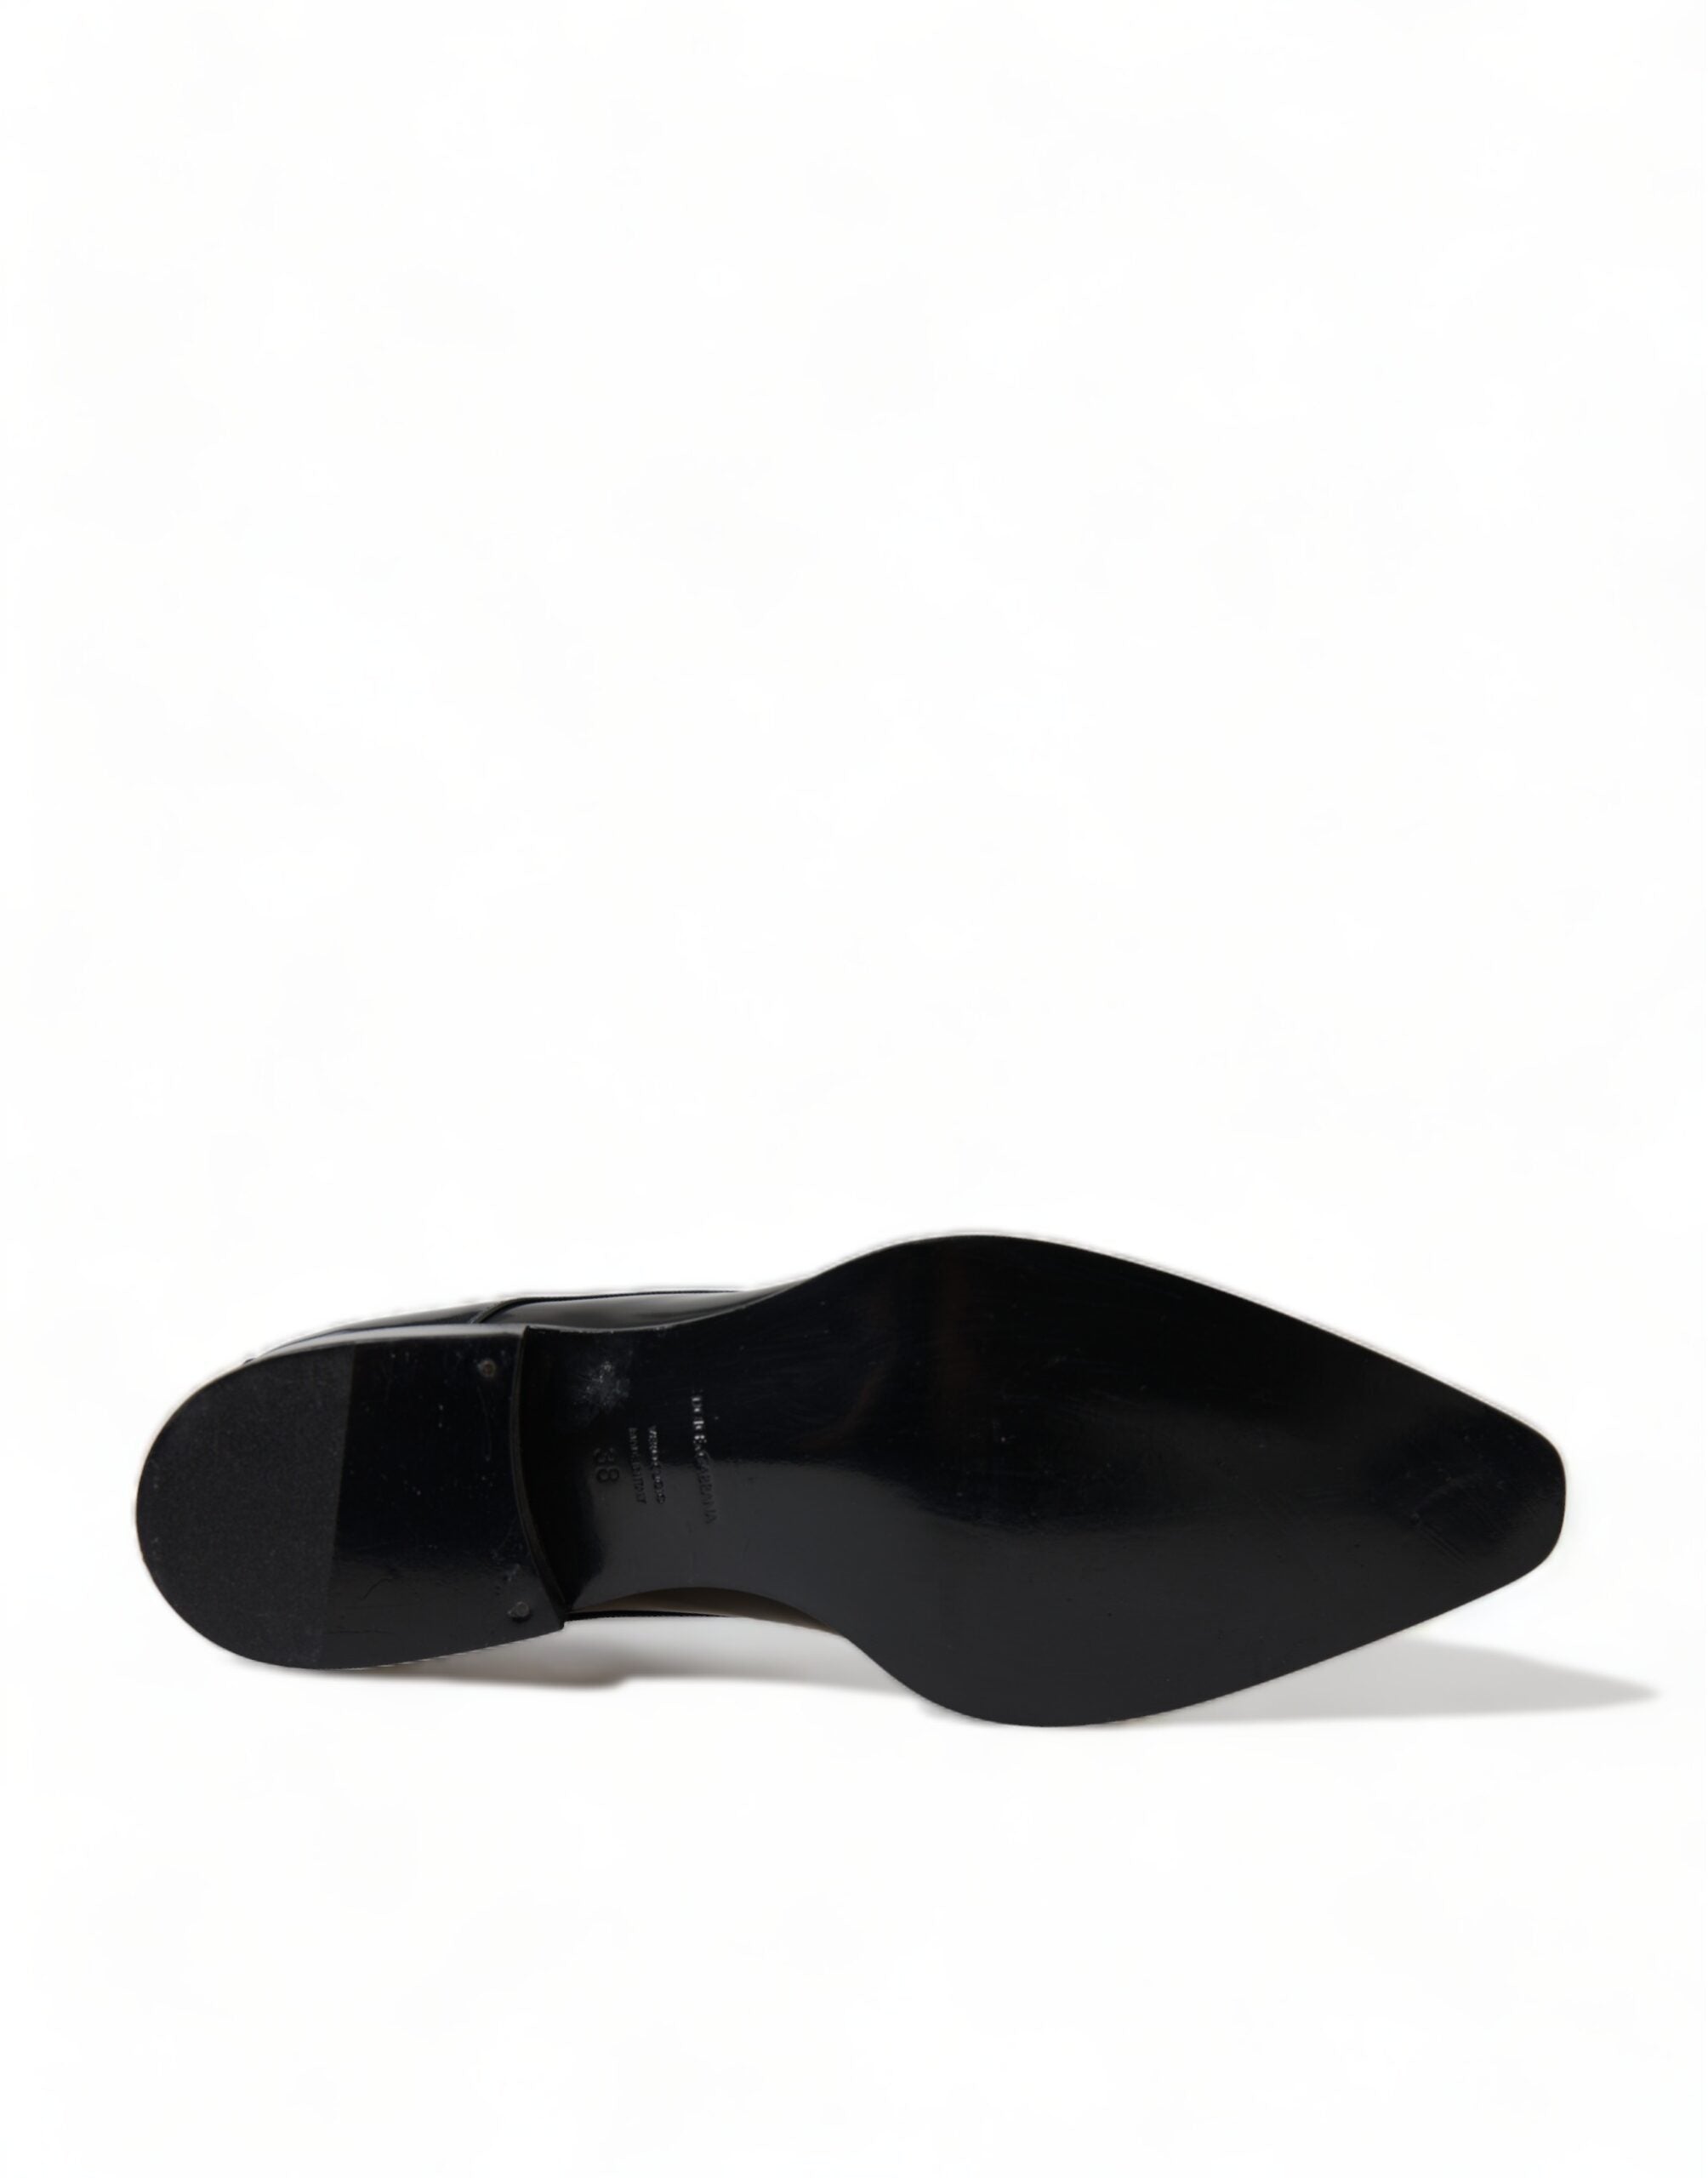 Dolce & Gabbana Elegantes zapatos planos formales de cuero negro